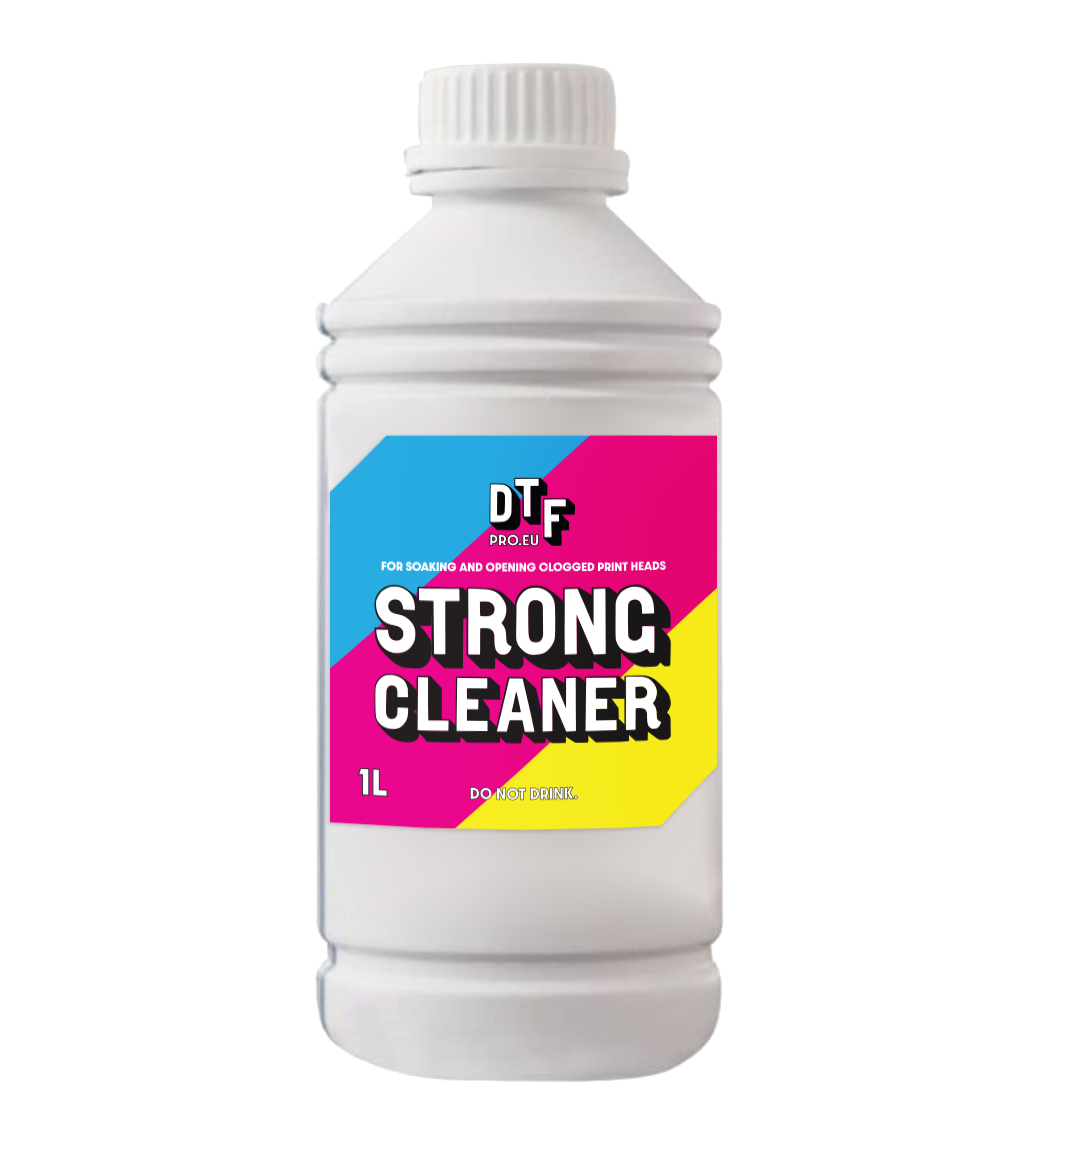 DTFPRO Strong Cleaner 1L